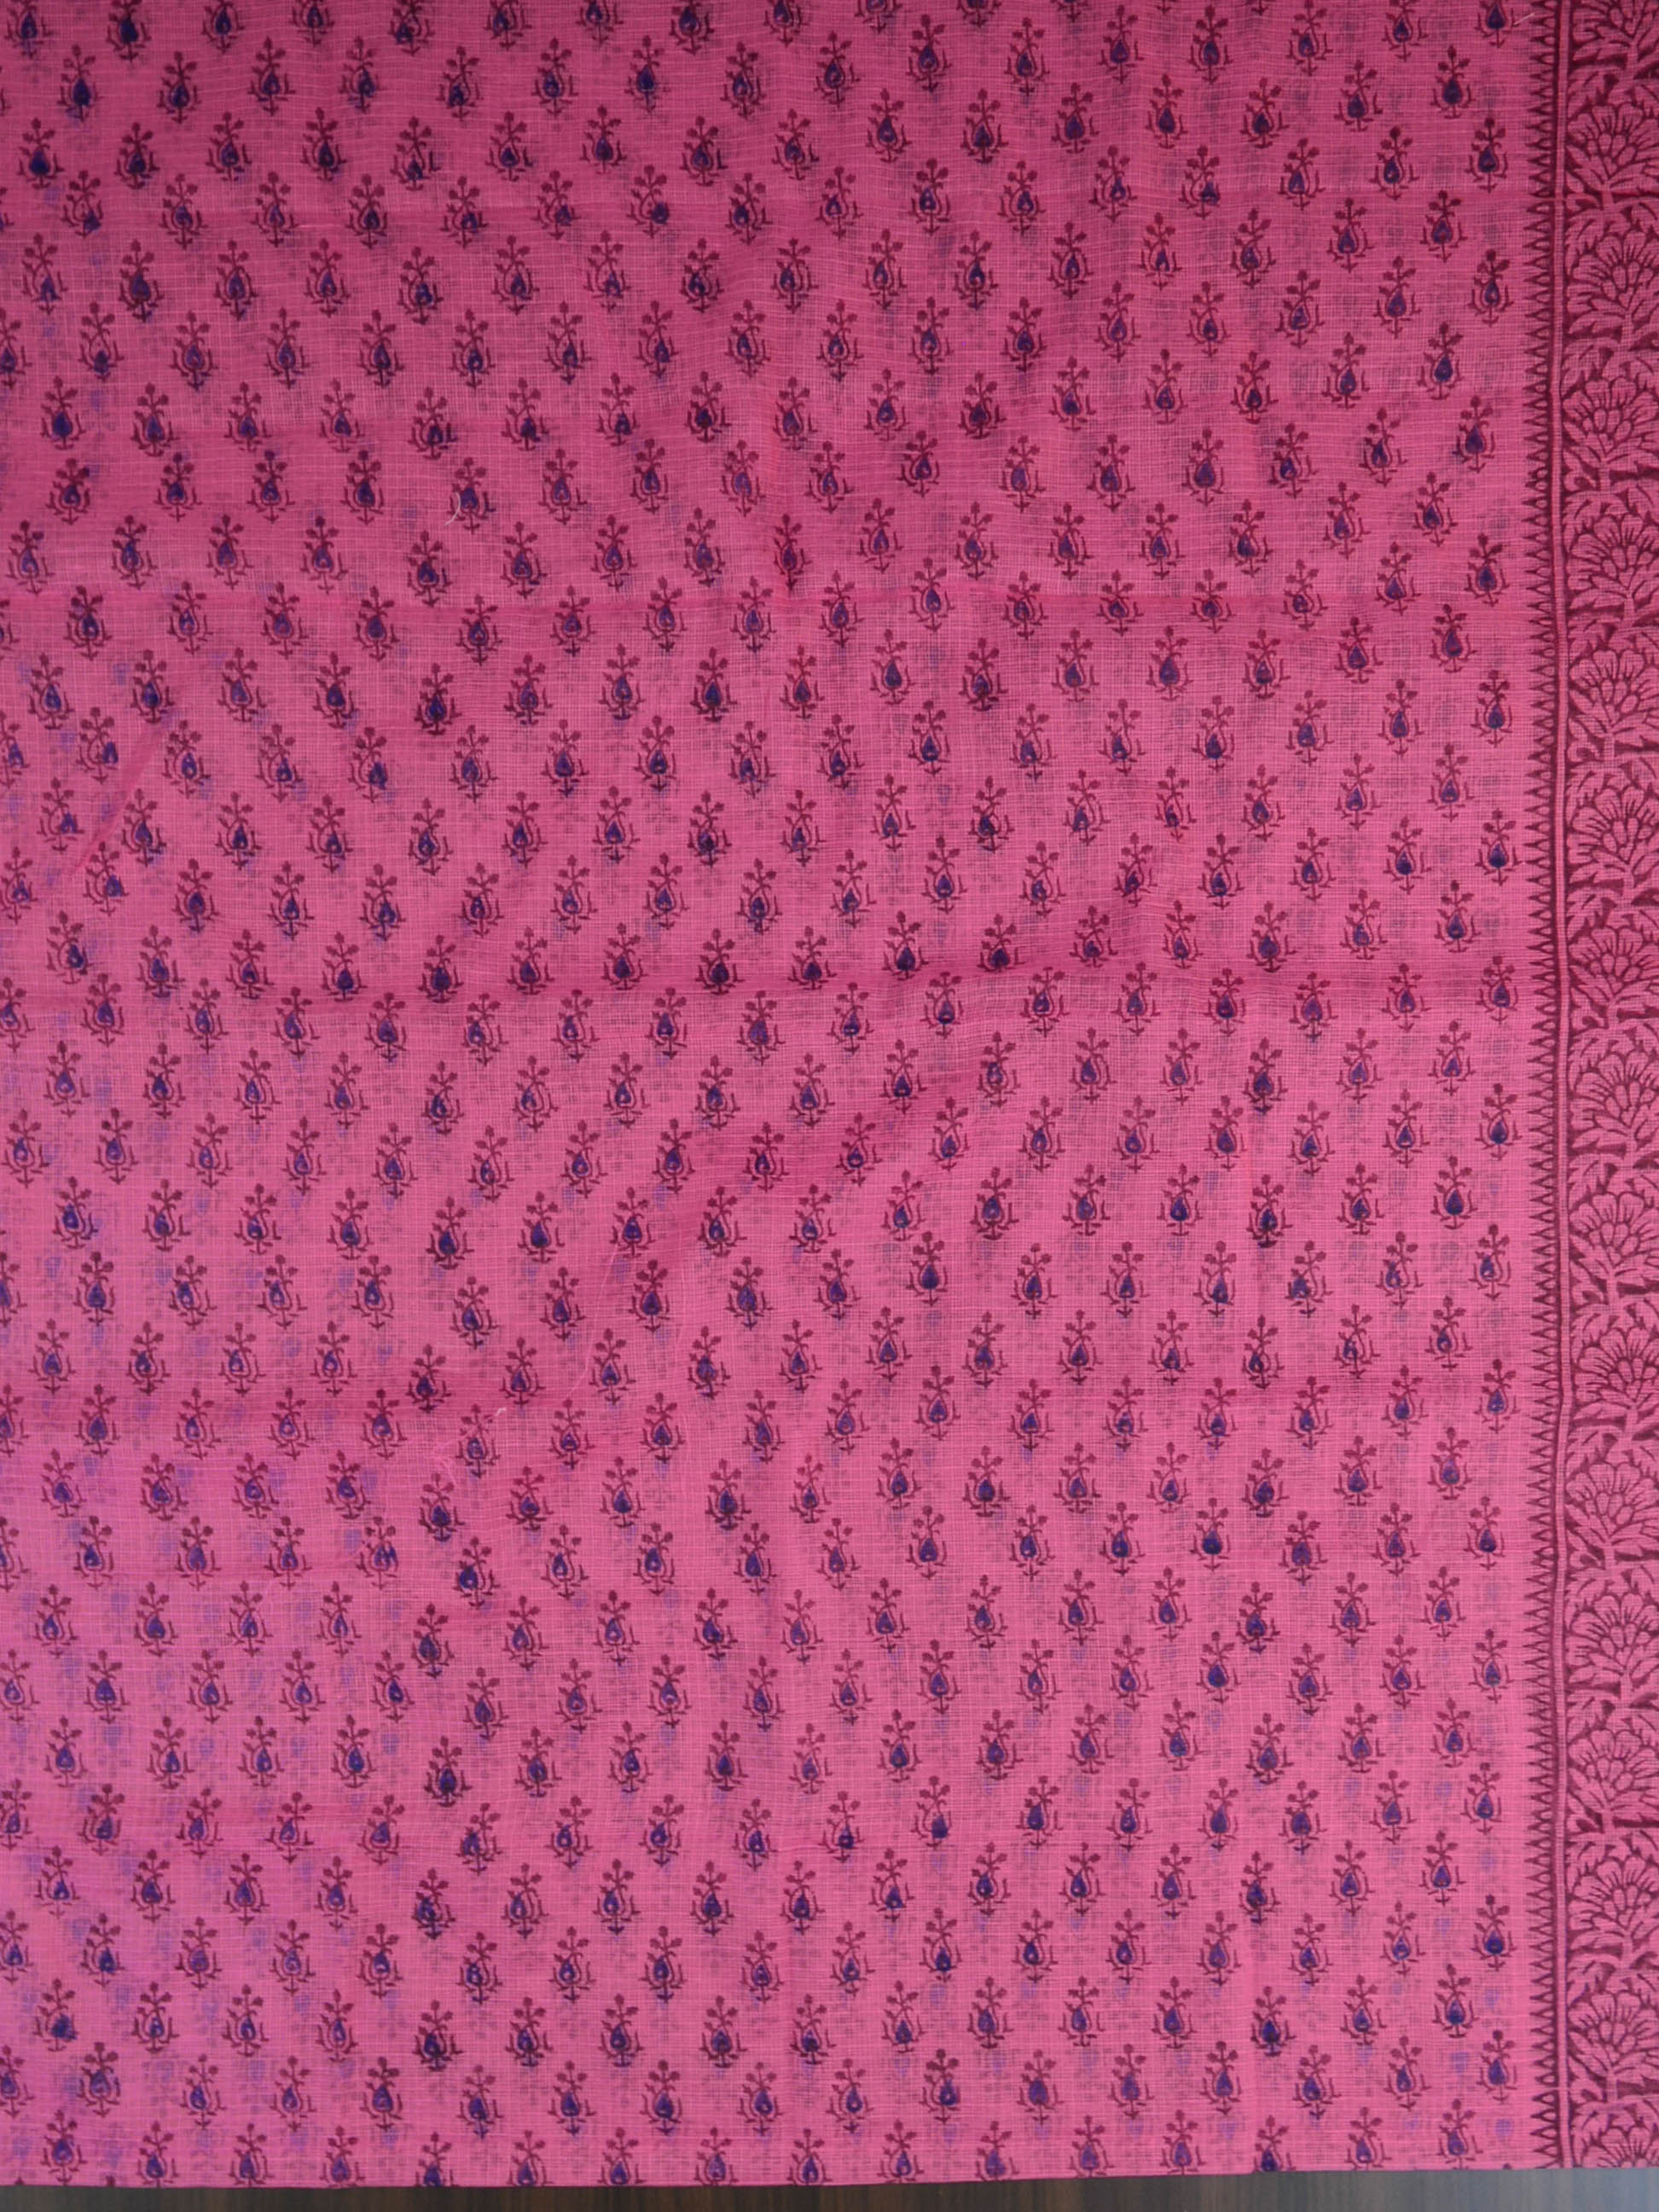 Kota Doria Block Printed Salwar Kameez Dupatta Set-Pink